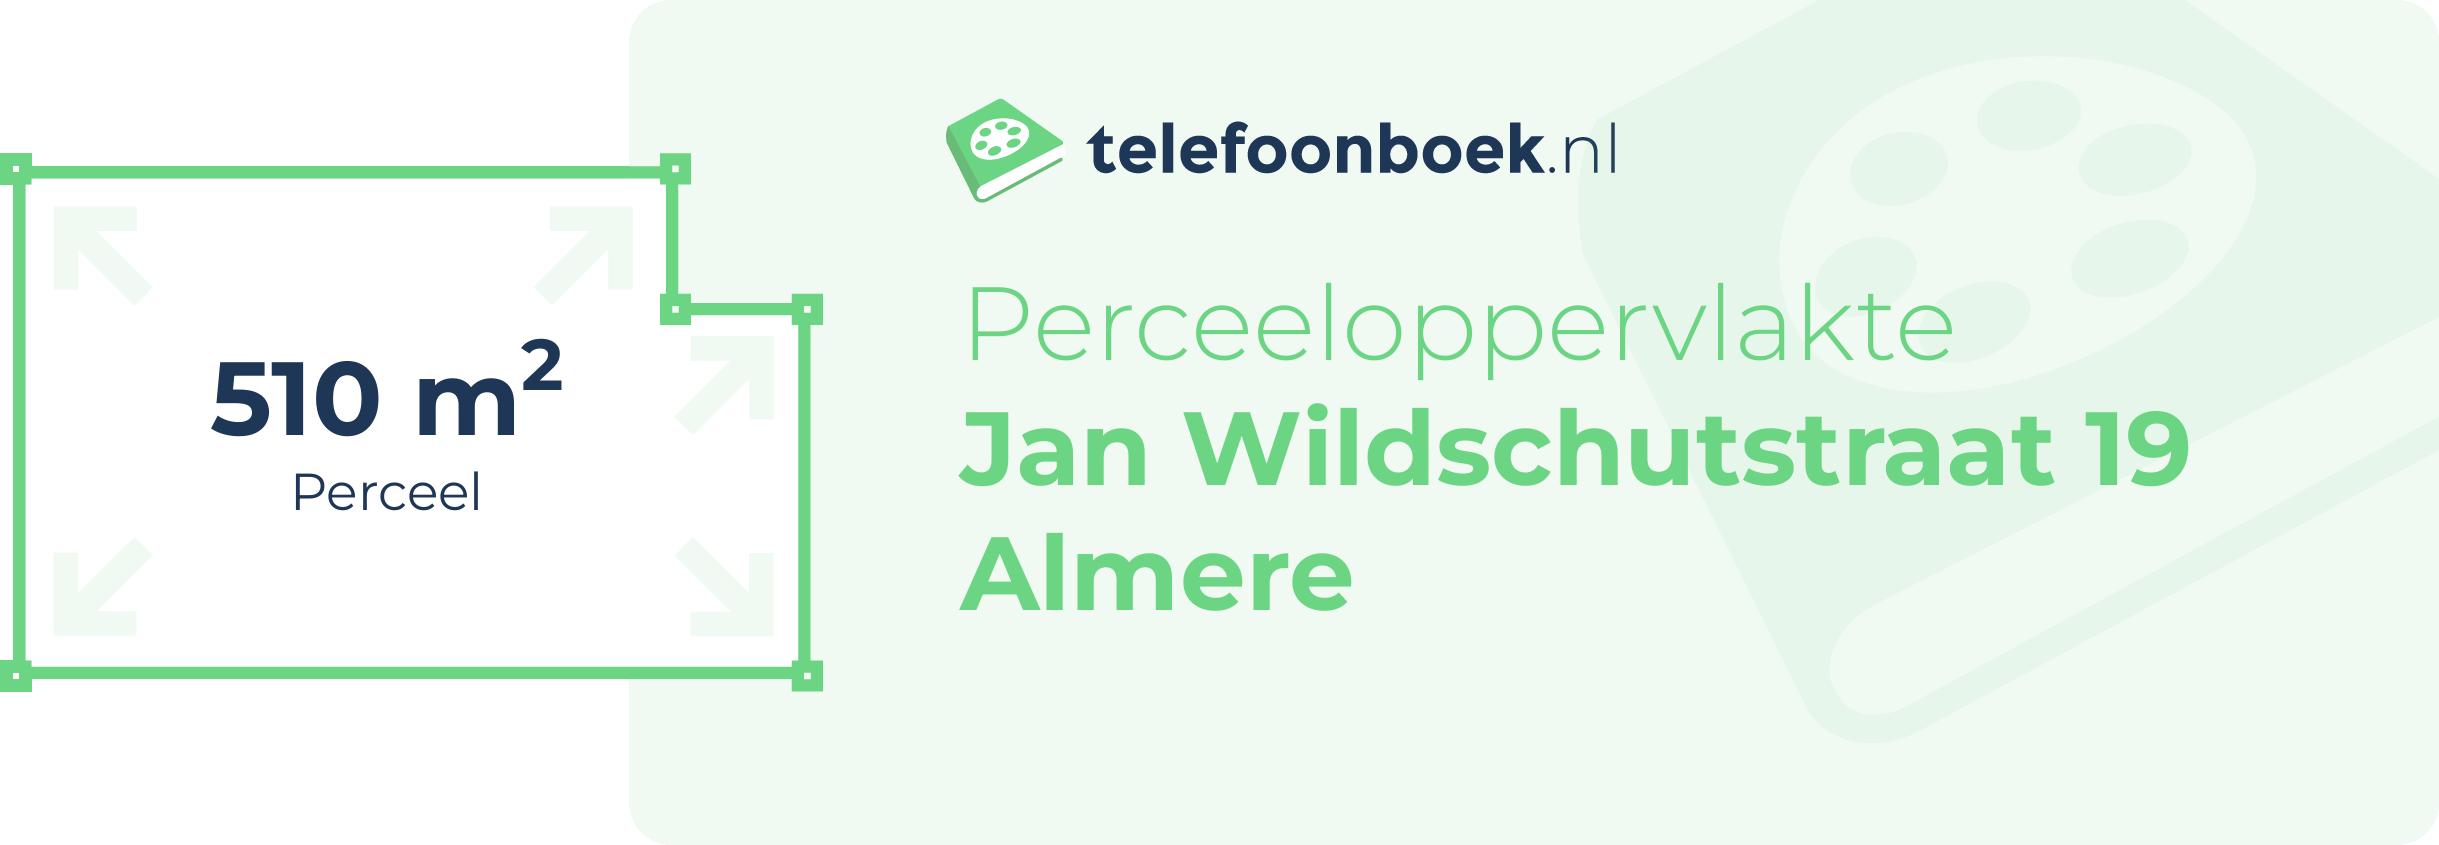 Perceeloppervlakte Jan Wildschutstraat 19 Almere